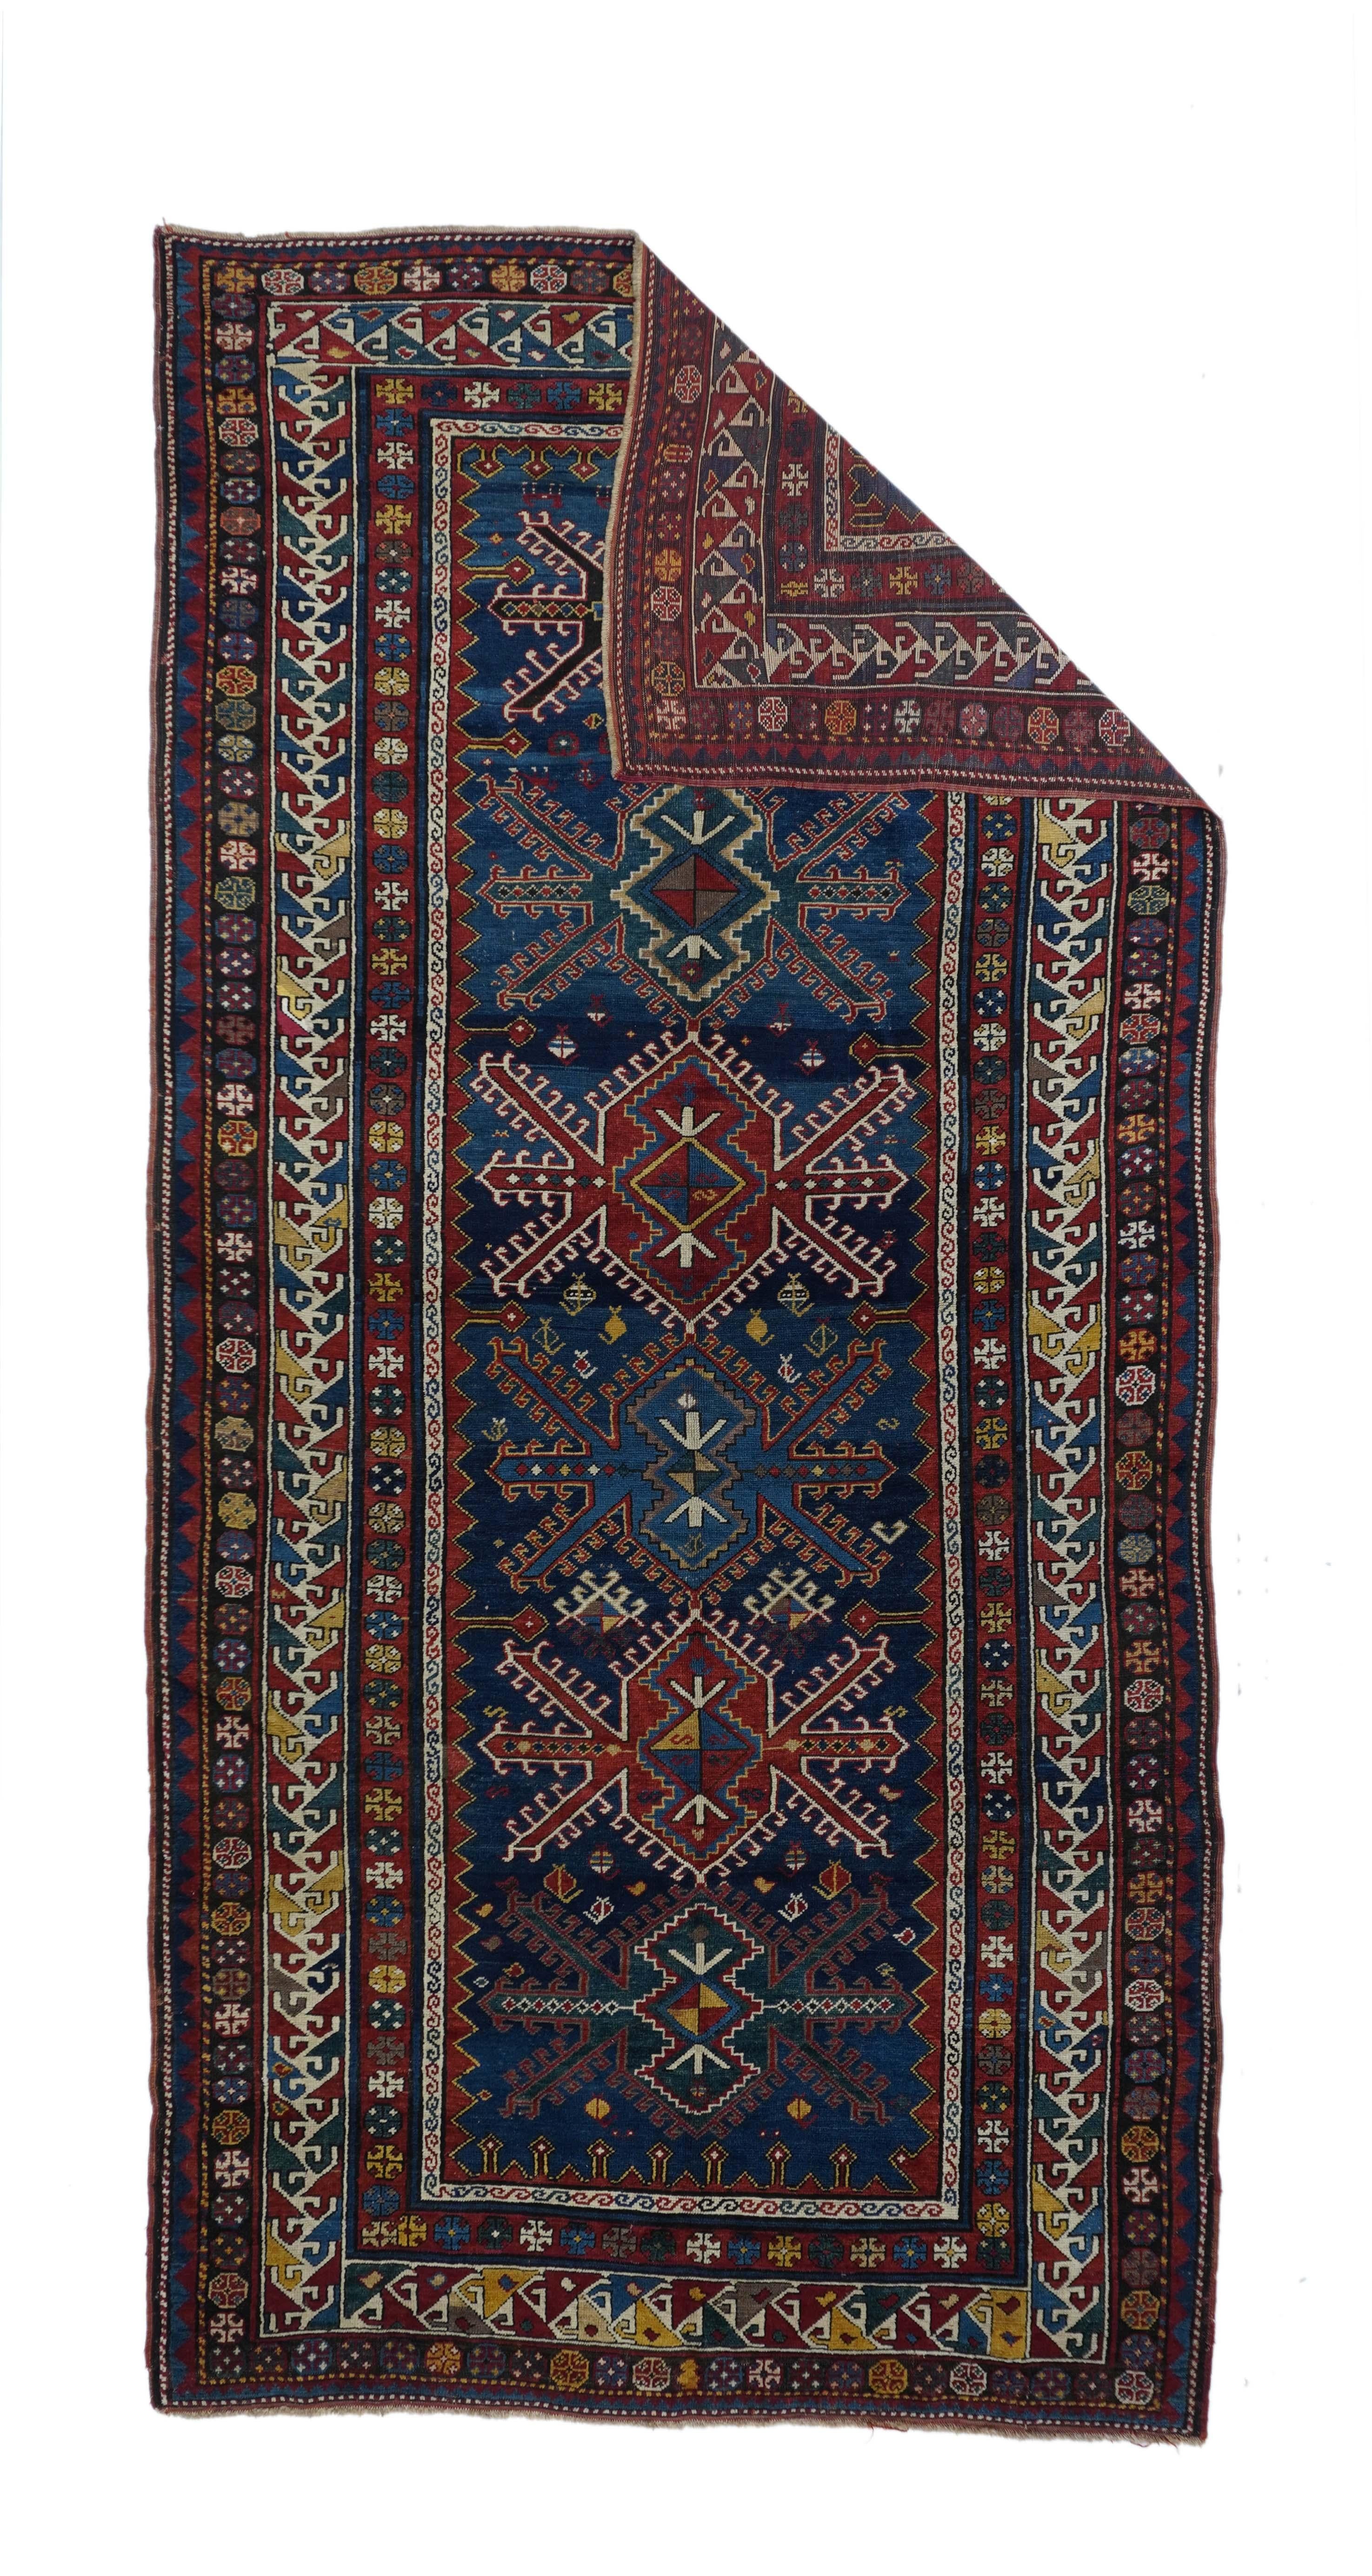 Tapis Kazak antique 5'7'' x 11'11''. Ce grand Kazak (tapis long) sur laine, au tissage modéré, présente un champ bleu foncé bien abrasé, avec six médaillons de style turkmène en rouge et bleu moyen, et des bordures uniformes avec des crochets.